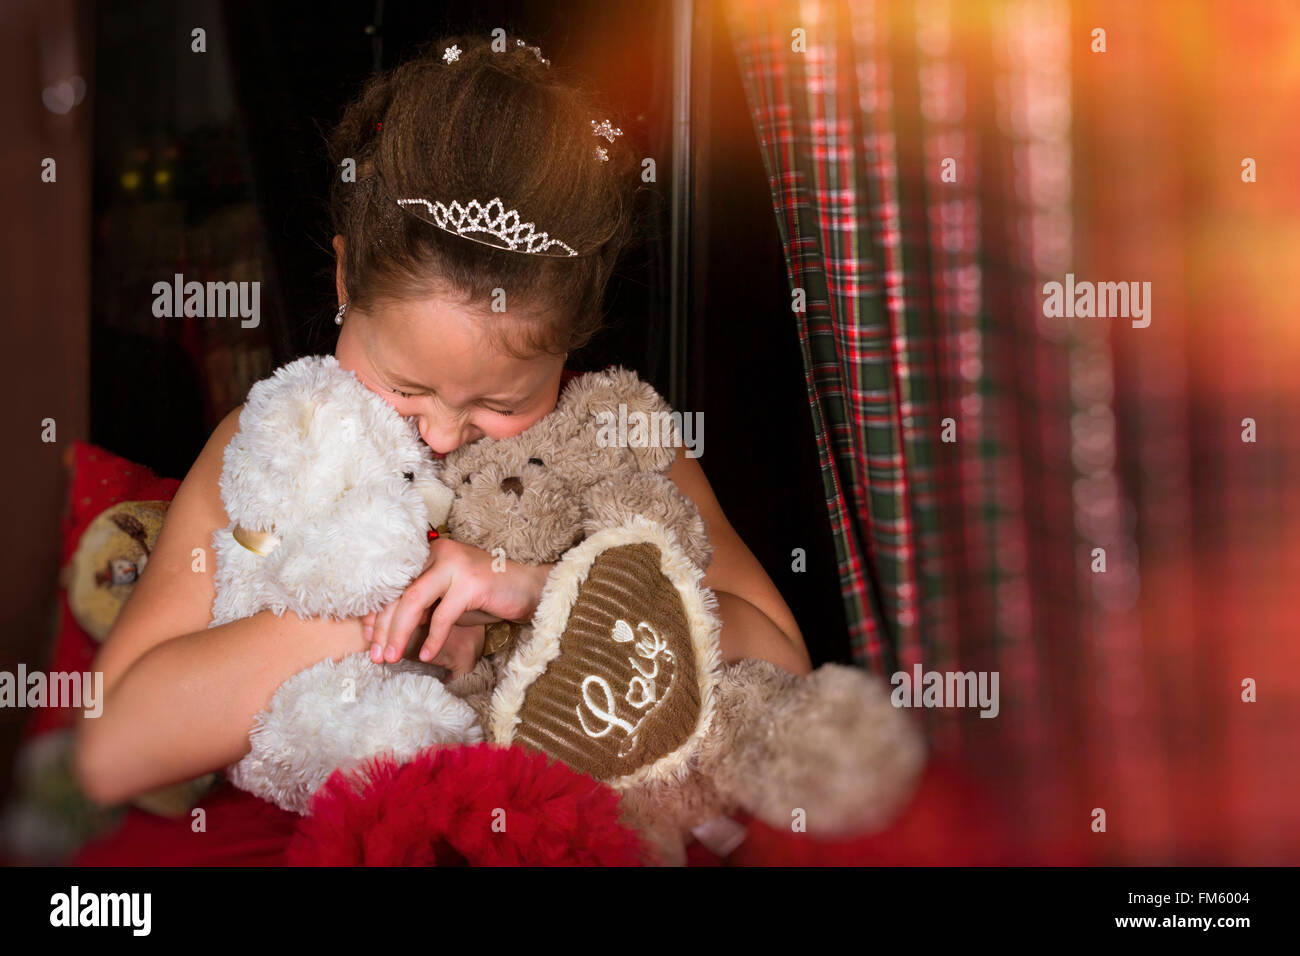 Sorridente adorabile bambina vestito in un lussureggiante abito rosso, molto abbraccia due orsi di peluche, cuore con iscrizione amore Foto Stock